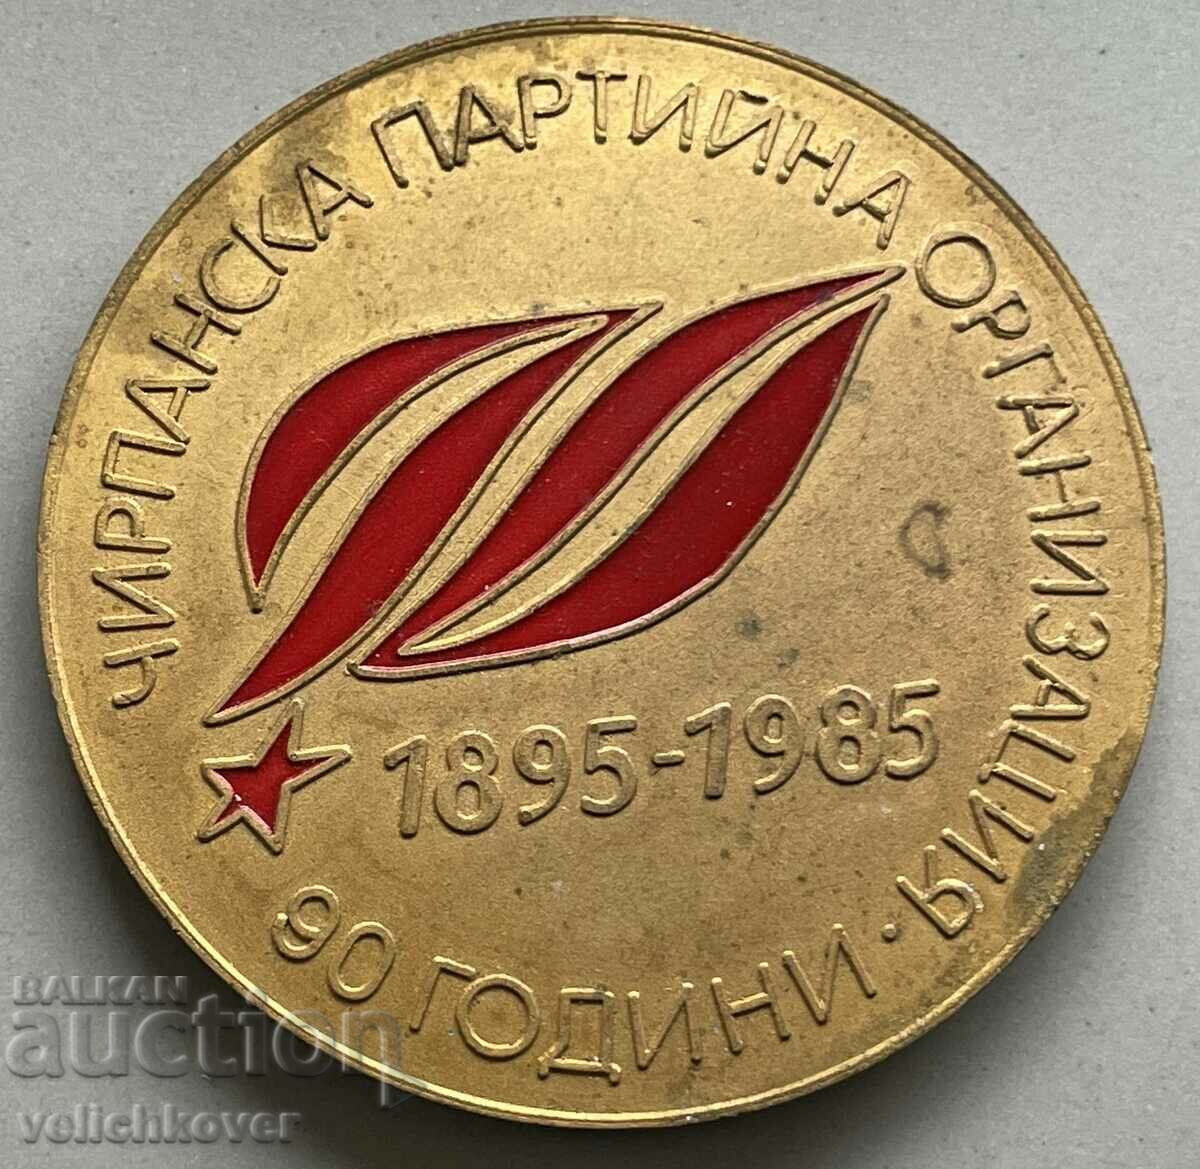 3412 България плакет 90г Чирпанска Партийна организация 1985